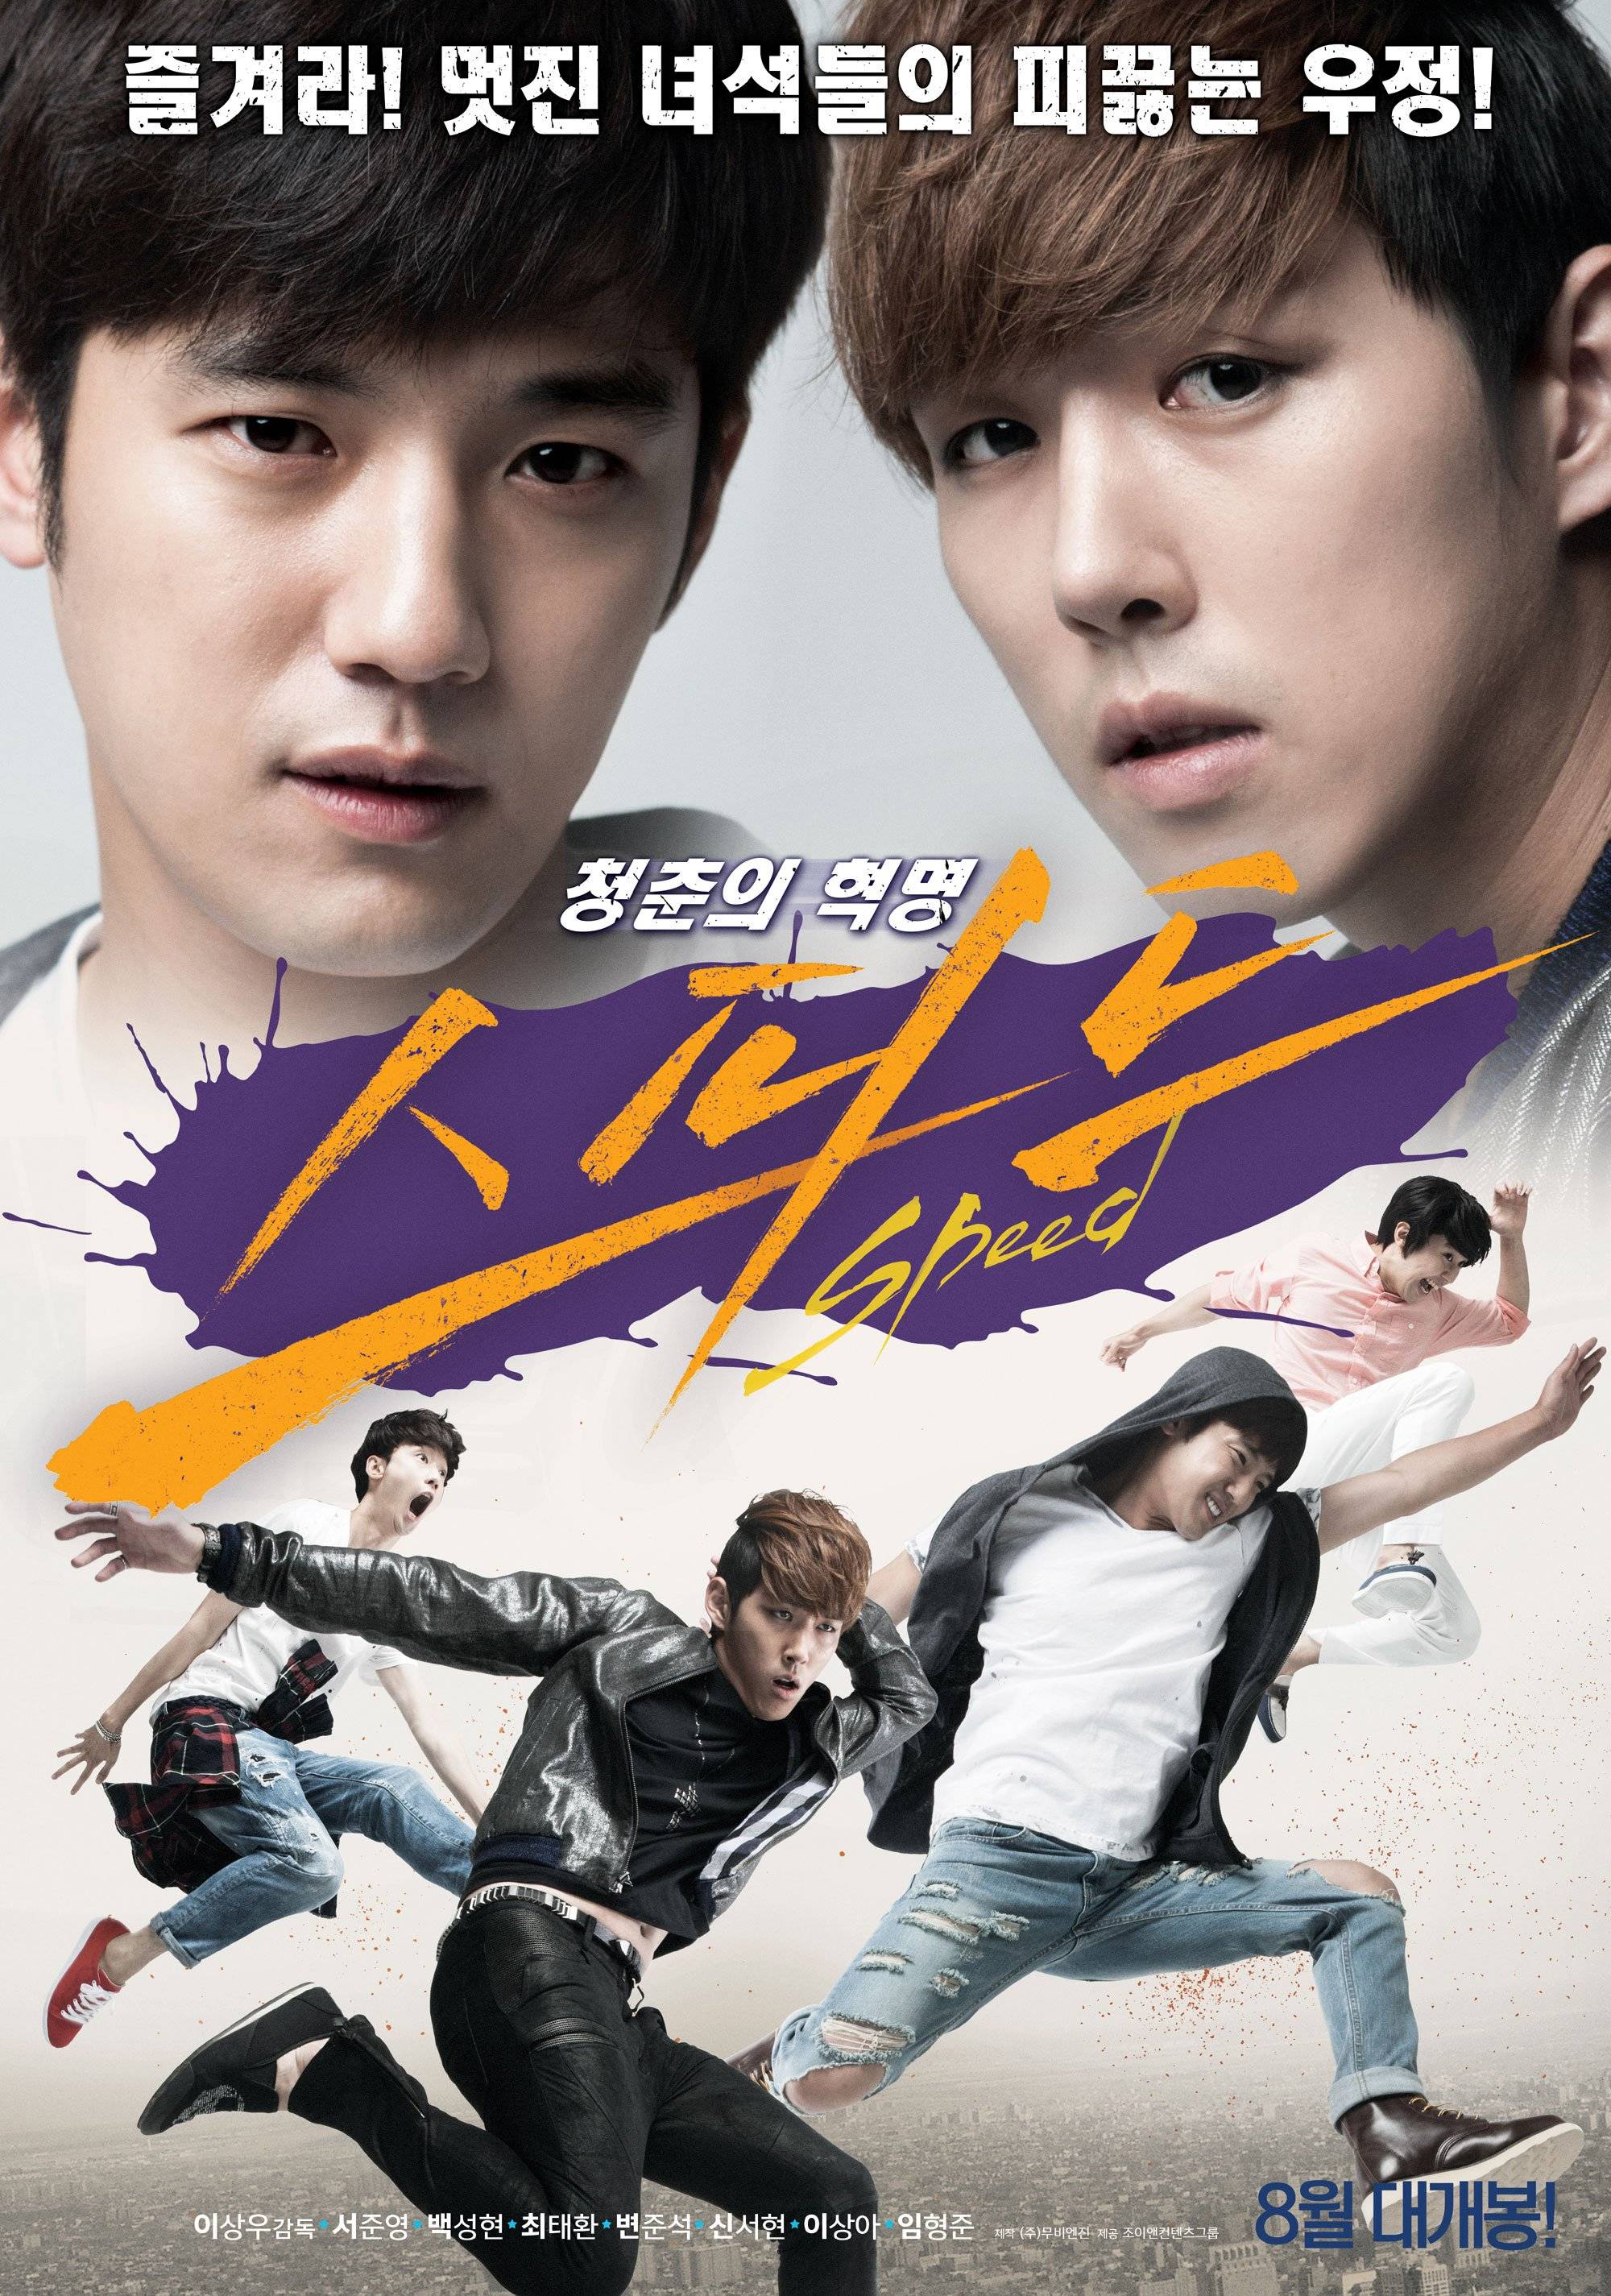 sunny korean movie full english sub 2011 full movie